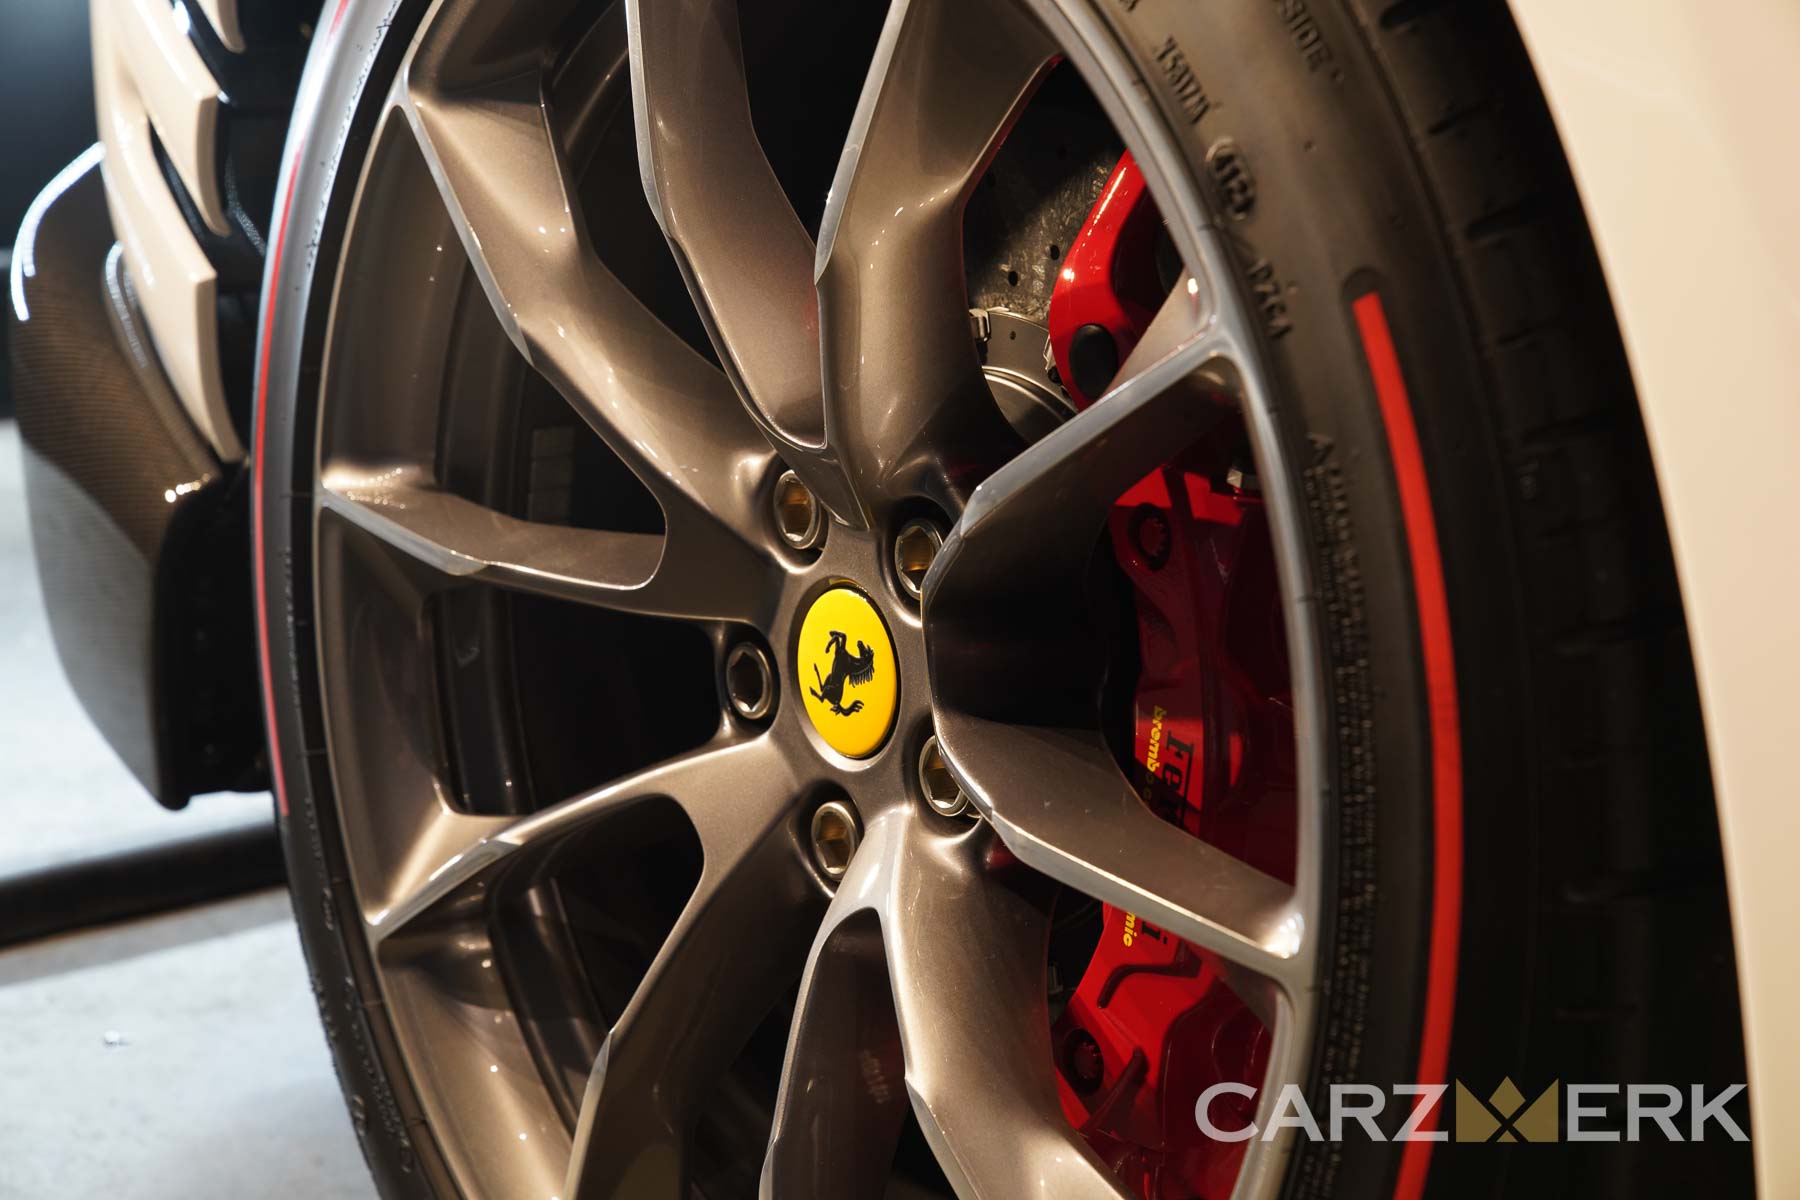 2022 Ferrari 812 Competizione - Bianco Cervino - Rear wheels and red stripe tires